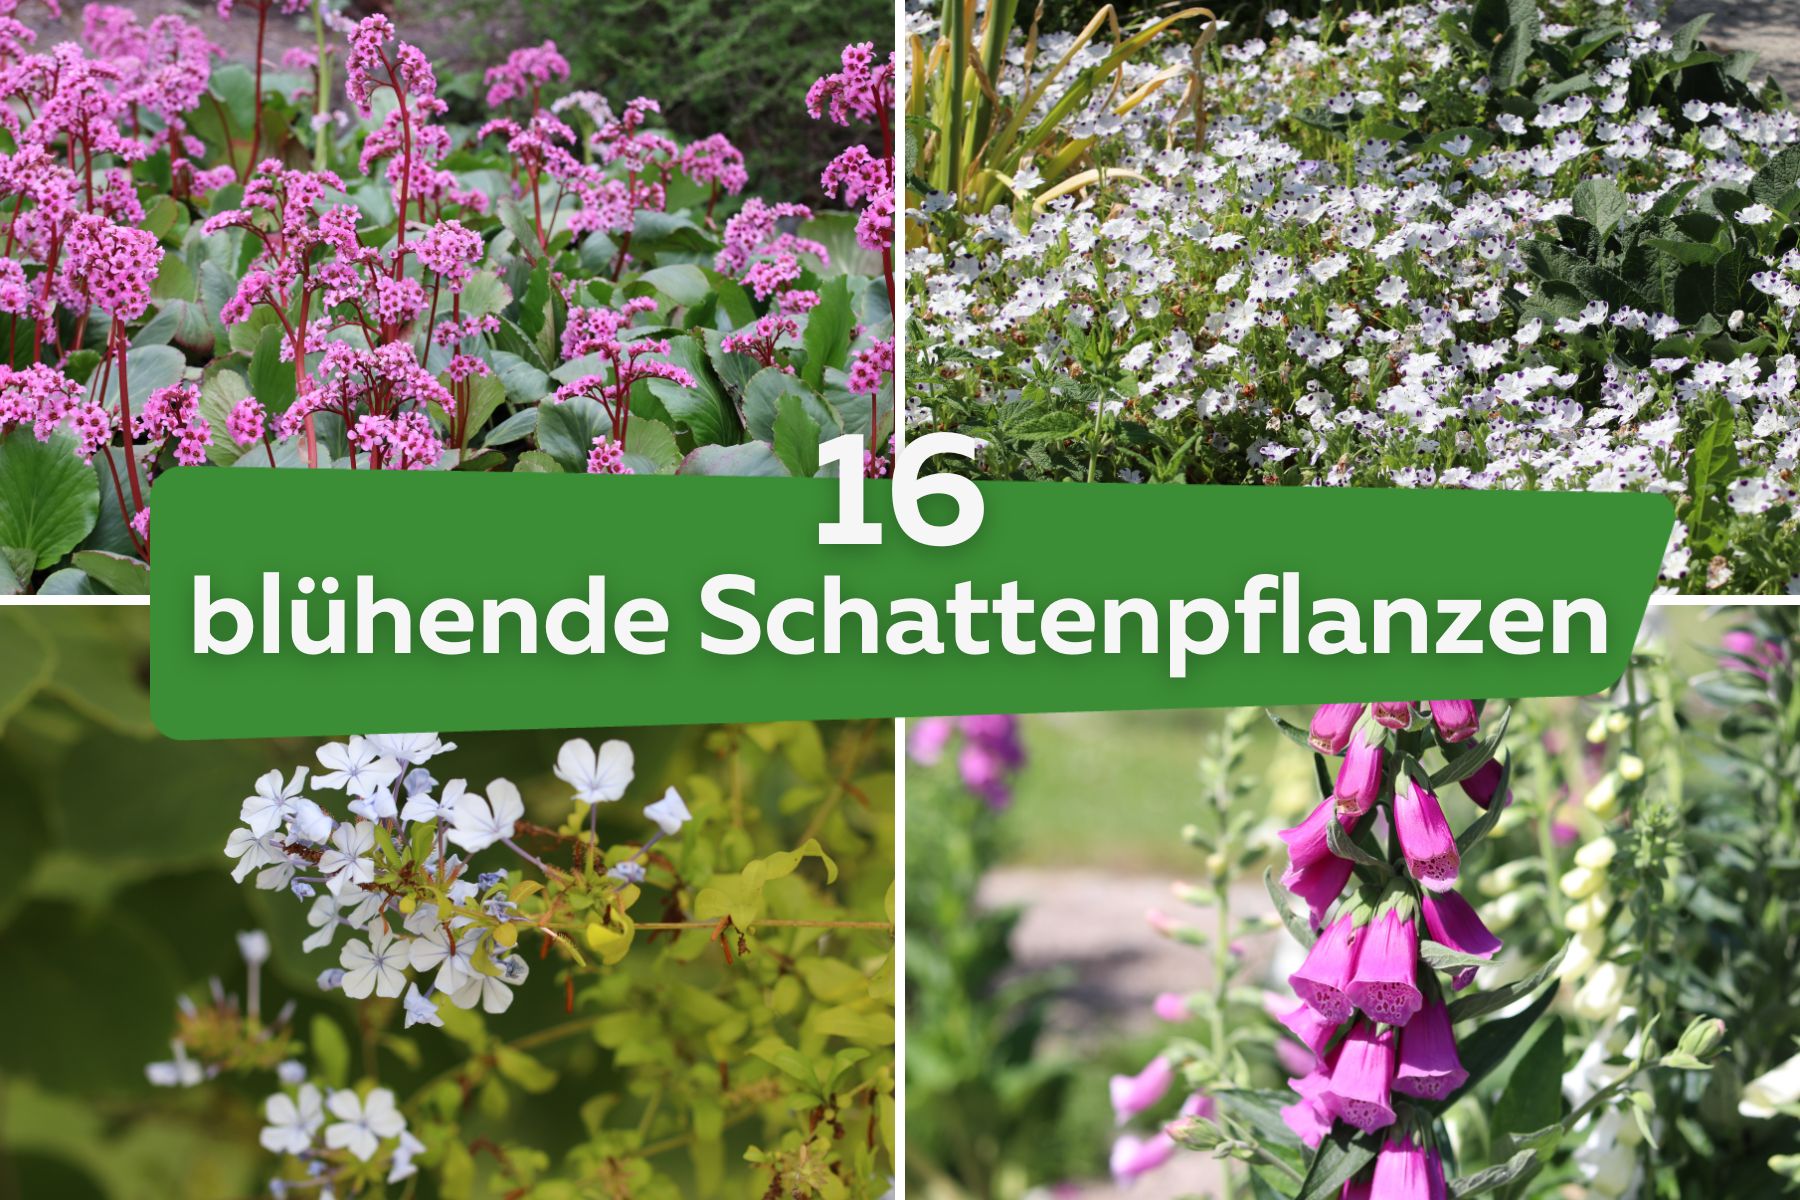 16 blühende Schattenpflanzen für den Garten | Bergenia, Bleiwurz, Fingerhut, Hainblume